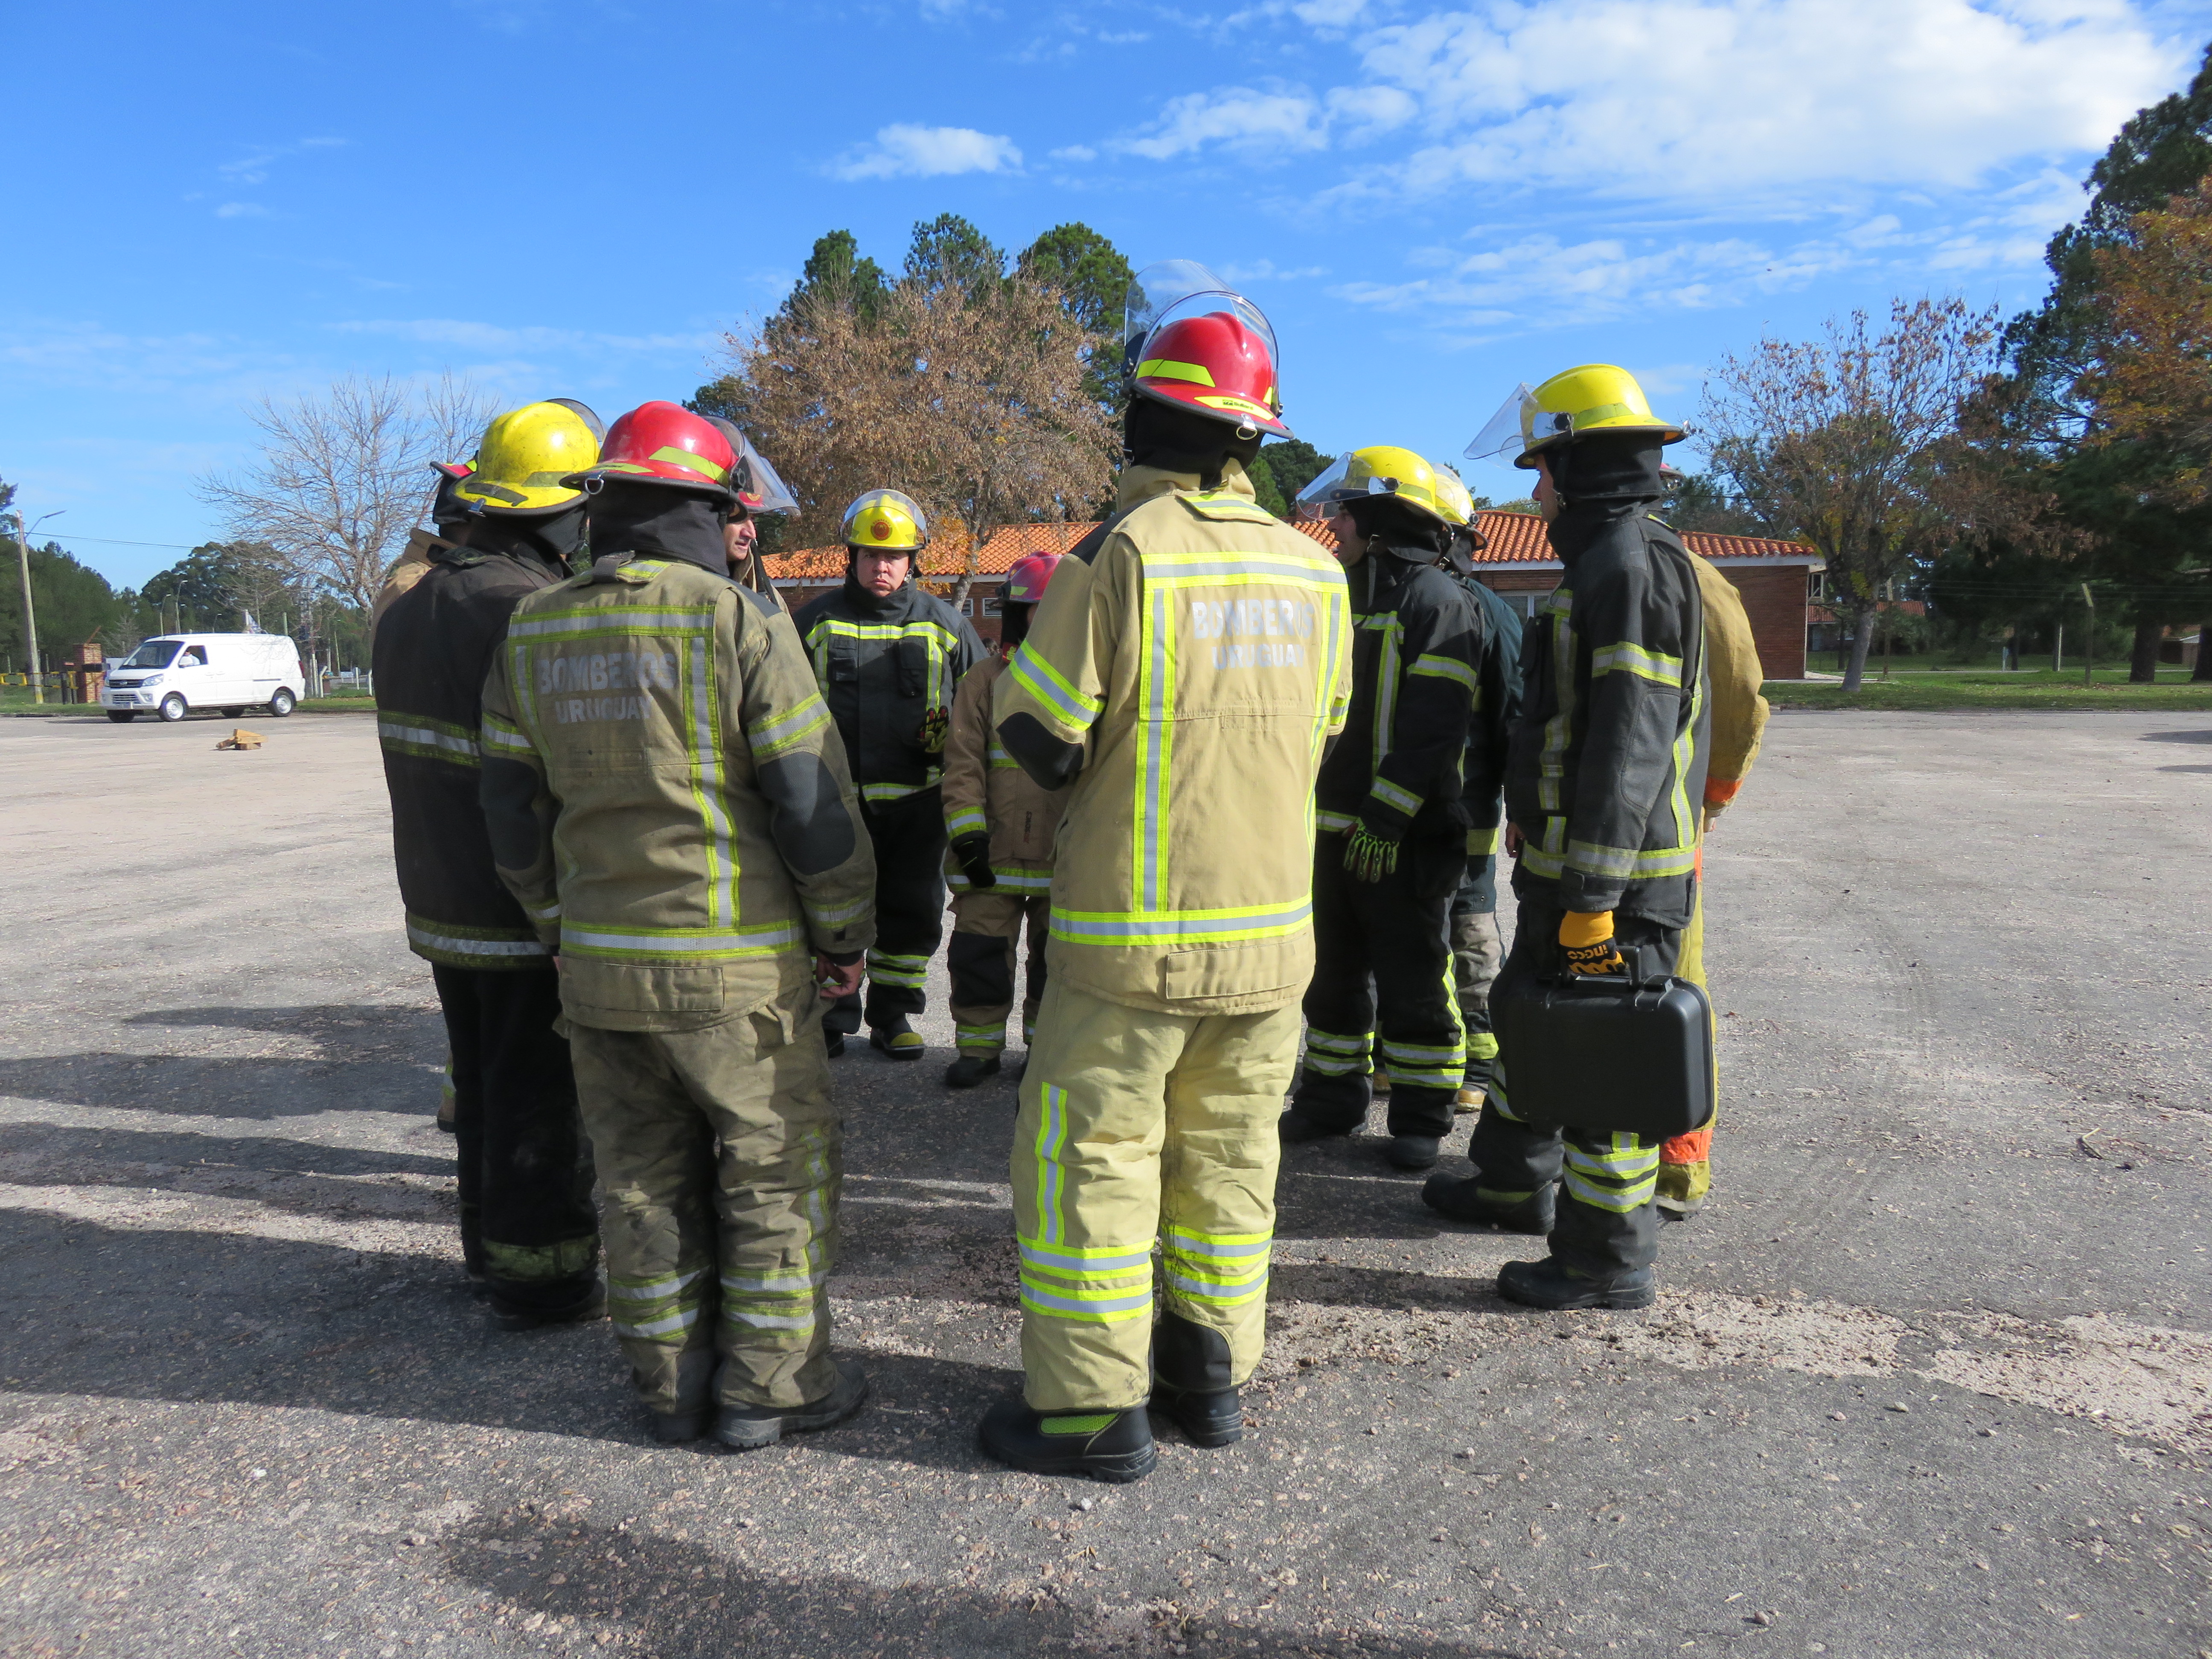 IMG_20230511_3783-Xsg97q8F.jpg - El pasado jueves 11 de mayo culminó la &#034;Capacitación para bomberos sobre manejo de incidentes relacionados con la movilidad eléctrica&#034; en donde se capacitaron a 25 bomberos en la Base Aérea de Santa Bernardina del departamento de Durazno. Esta capacitación es la continuación del primer curso regional que organizó la plataforma MOVE del Programa de la Naciones Unidas para el Medio Ambiente a finales de 2022 en Paraguay, donde participaron y se formaron dos bomberos instructores de Uruguay.